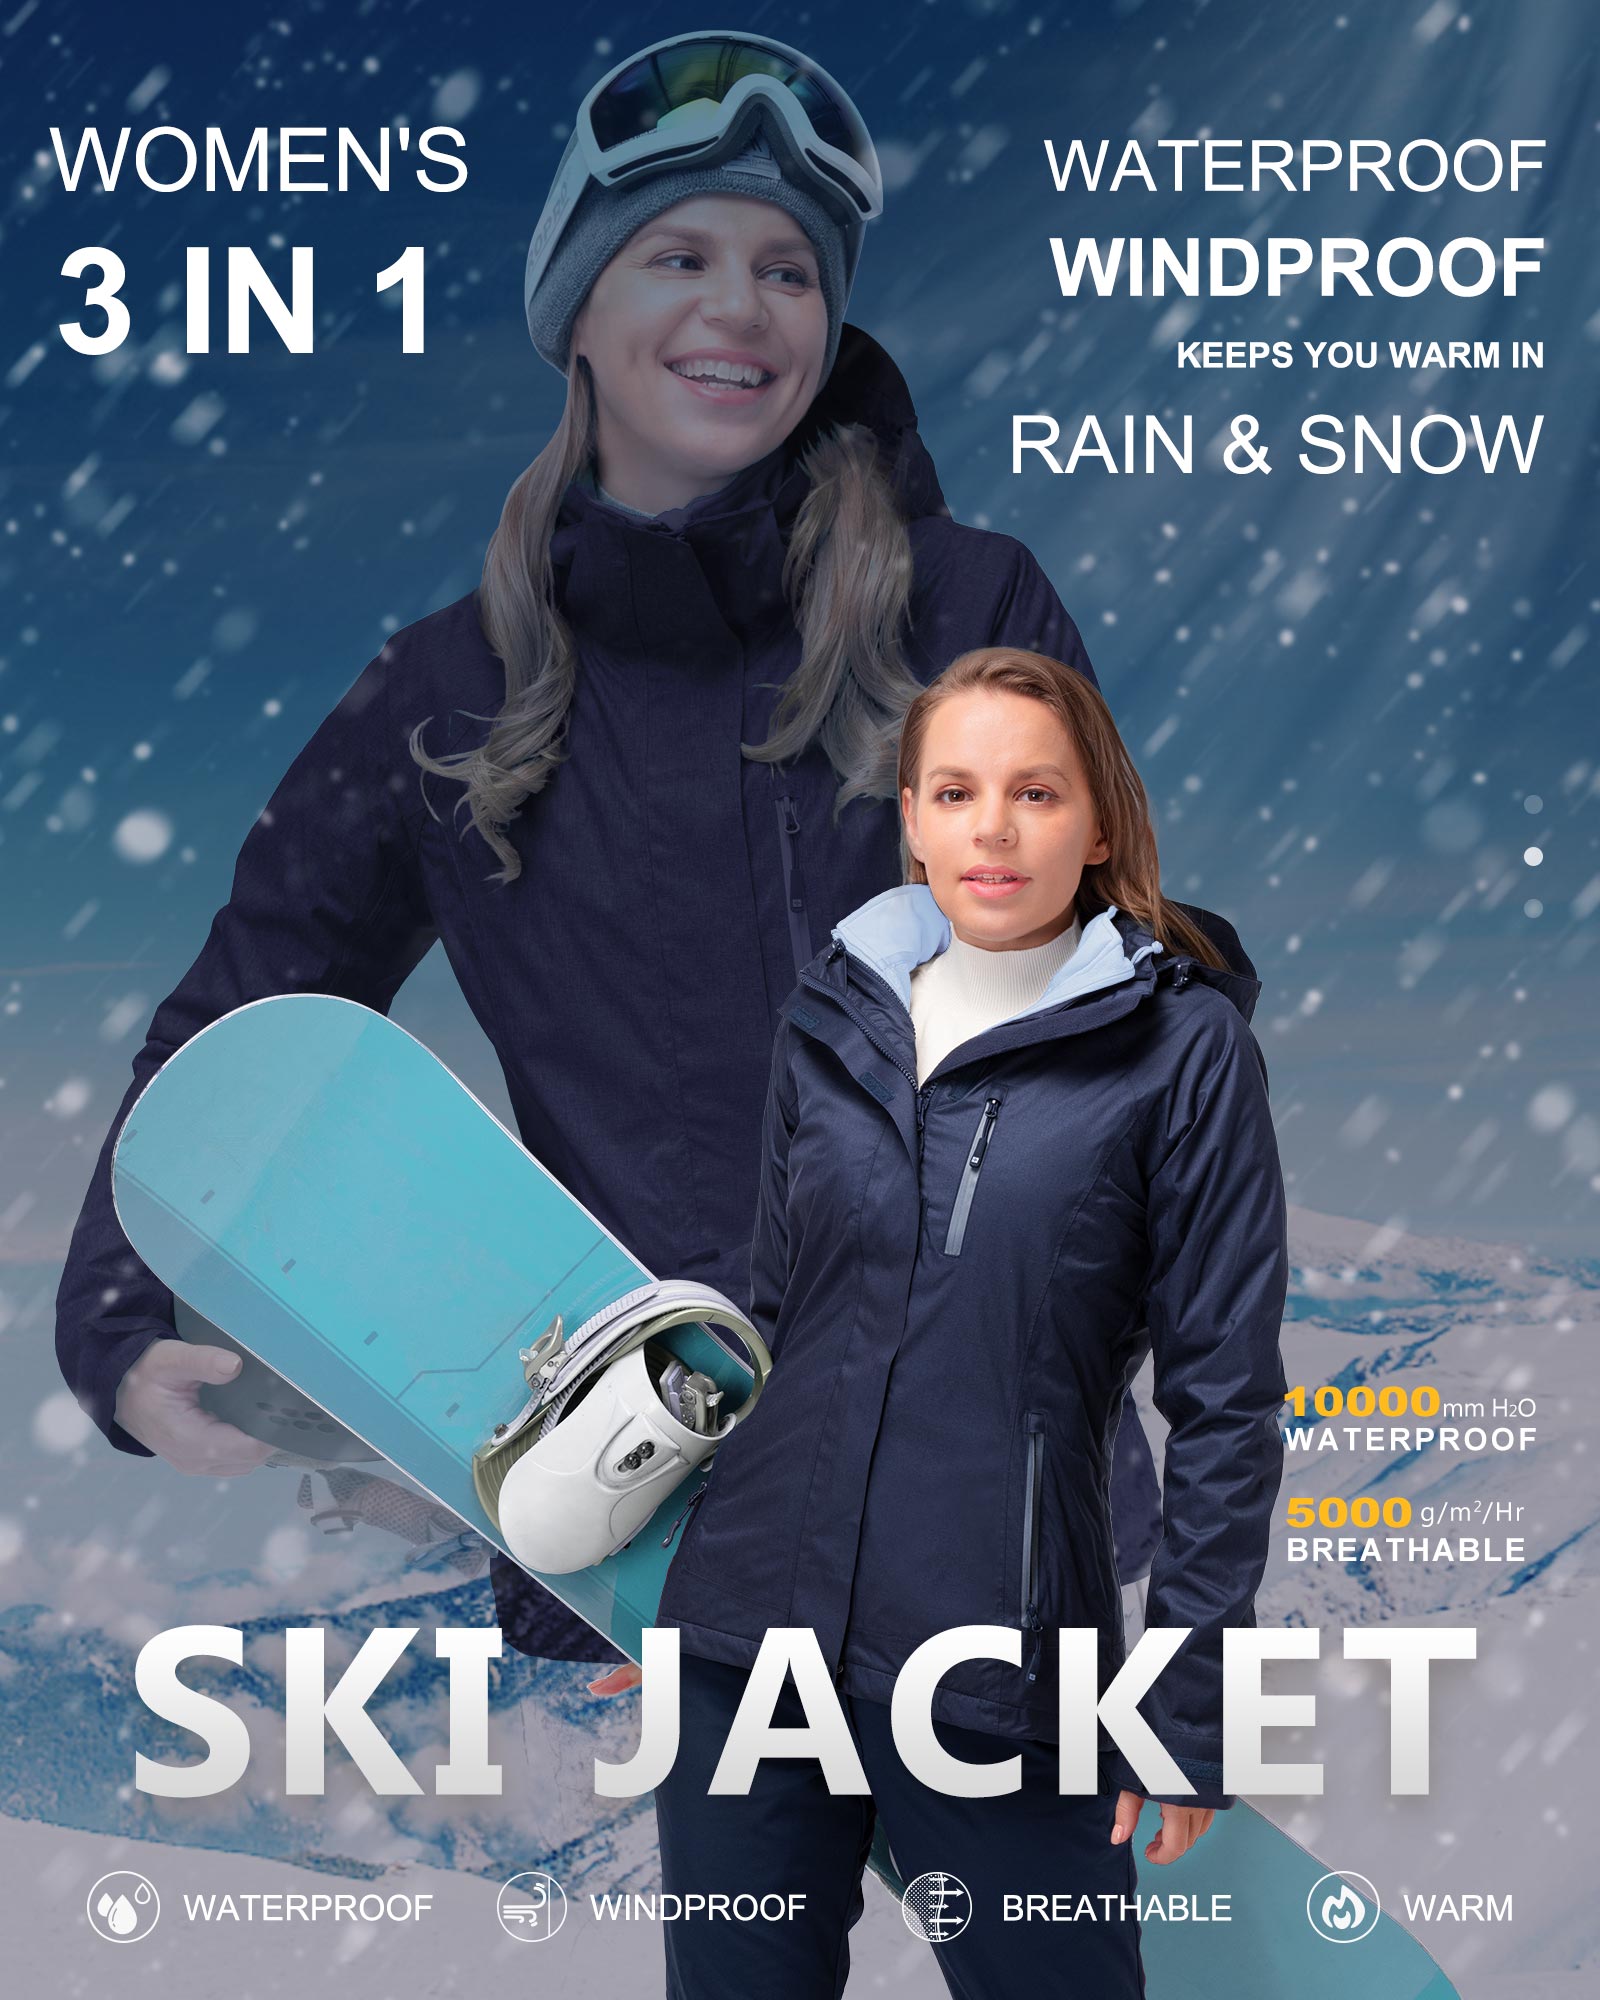 Buy Men's Windproof Fleece Jacket Winter Outdoor Sport Waterproof Ski Jacket  Coat Camping Hiking Skiing Running s Climbing at Amazon.in